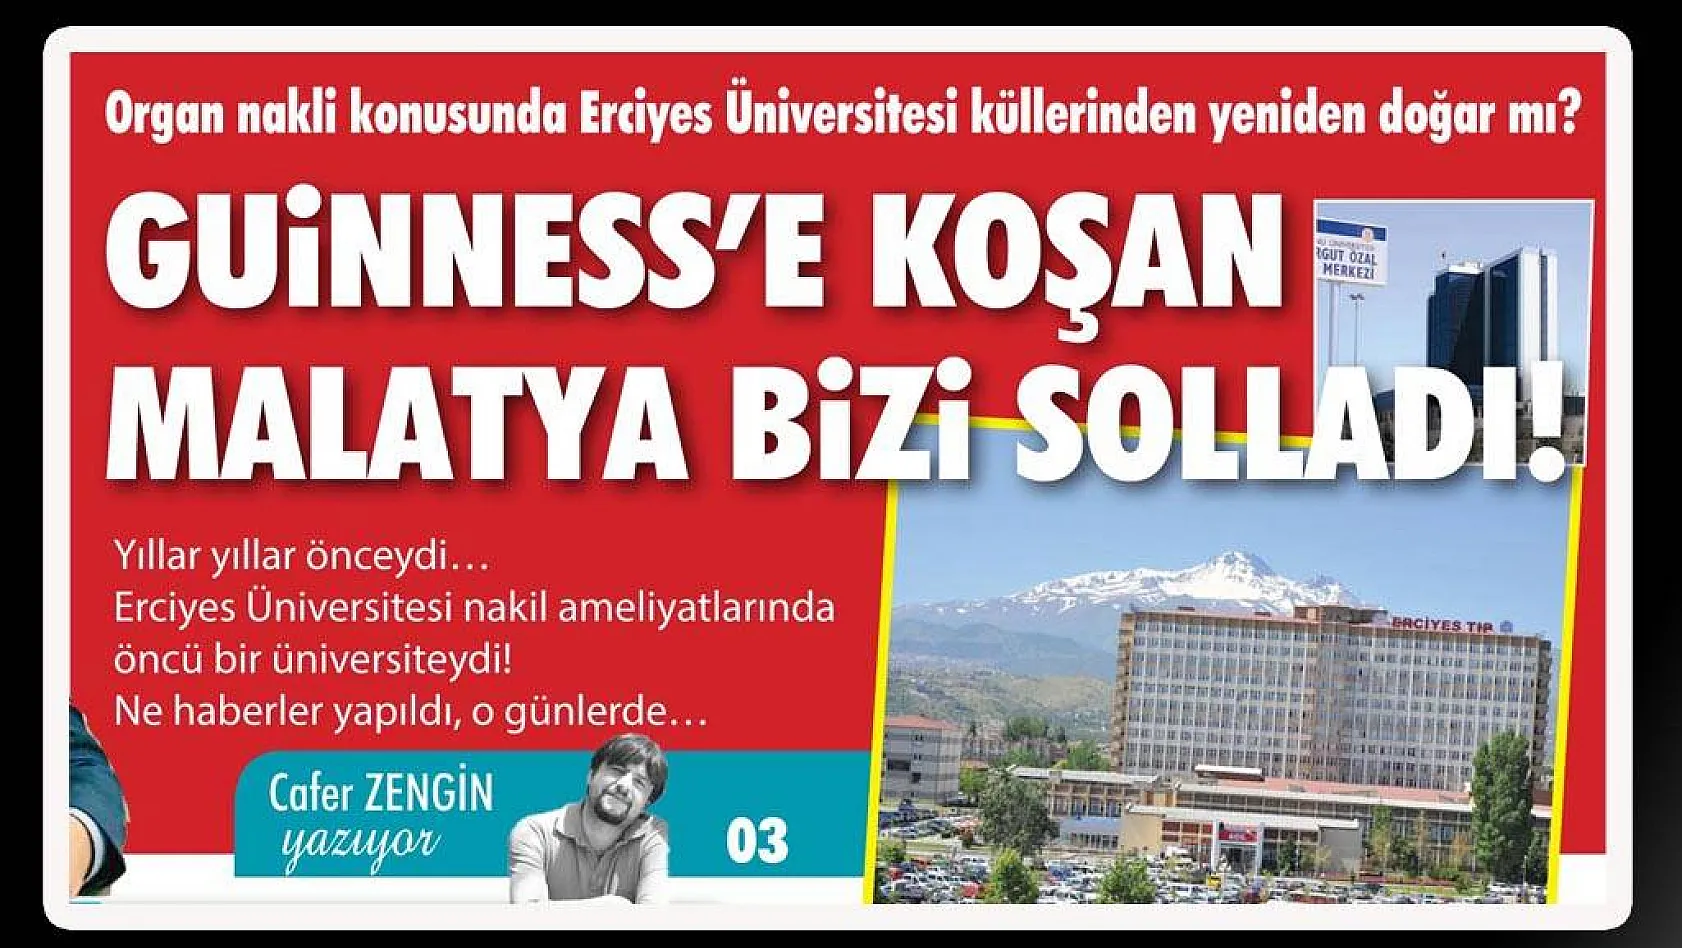 Erciyes Üniversitesine ne oldu?